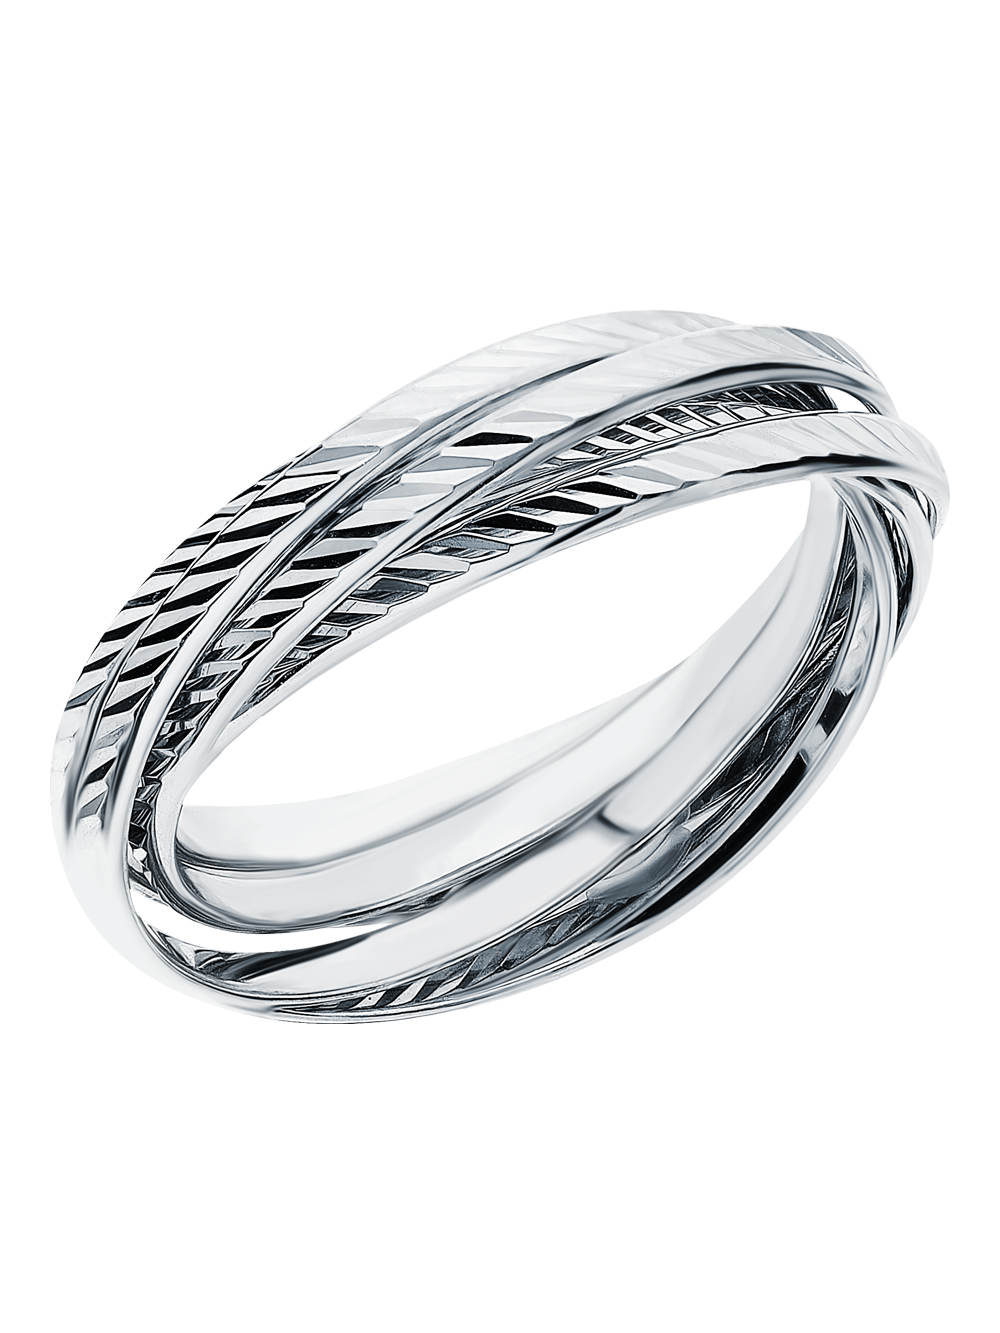 Серебряное кольцо SUNLIGHT 91-01-0497-00: белое серебро 925 пробы — купить в интернет-магазине Санлайт, фото, артикул 134679